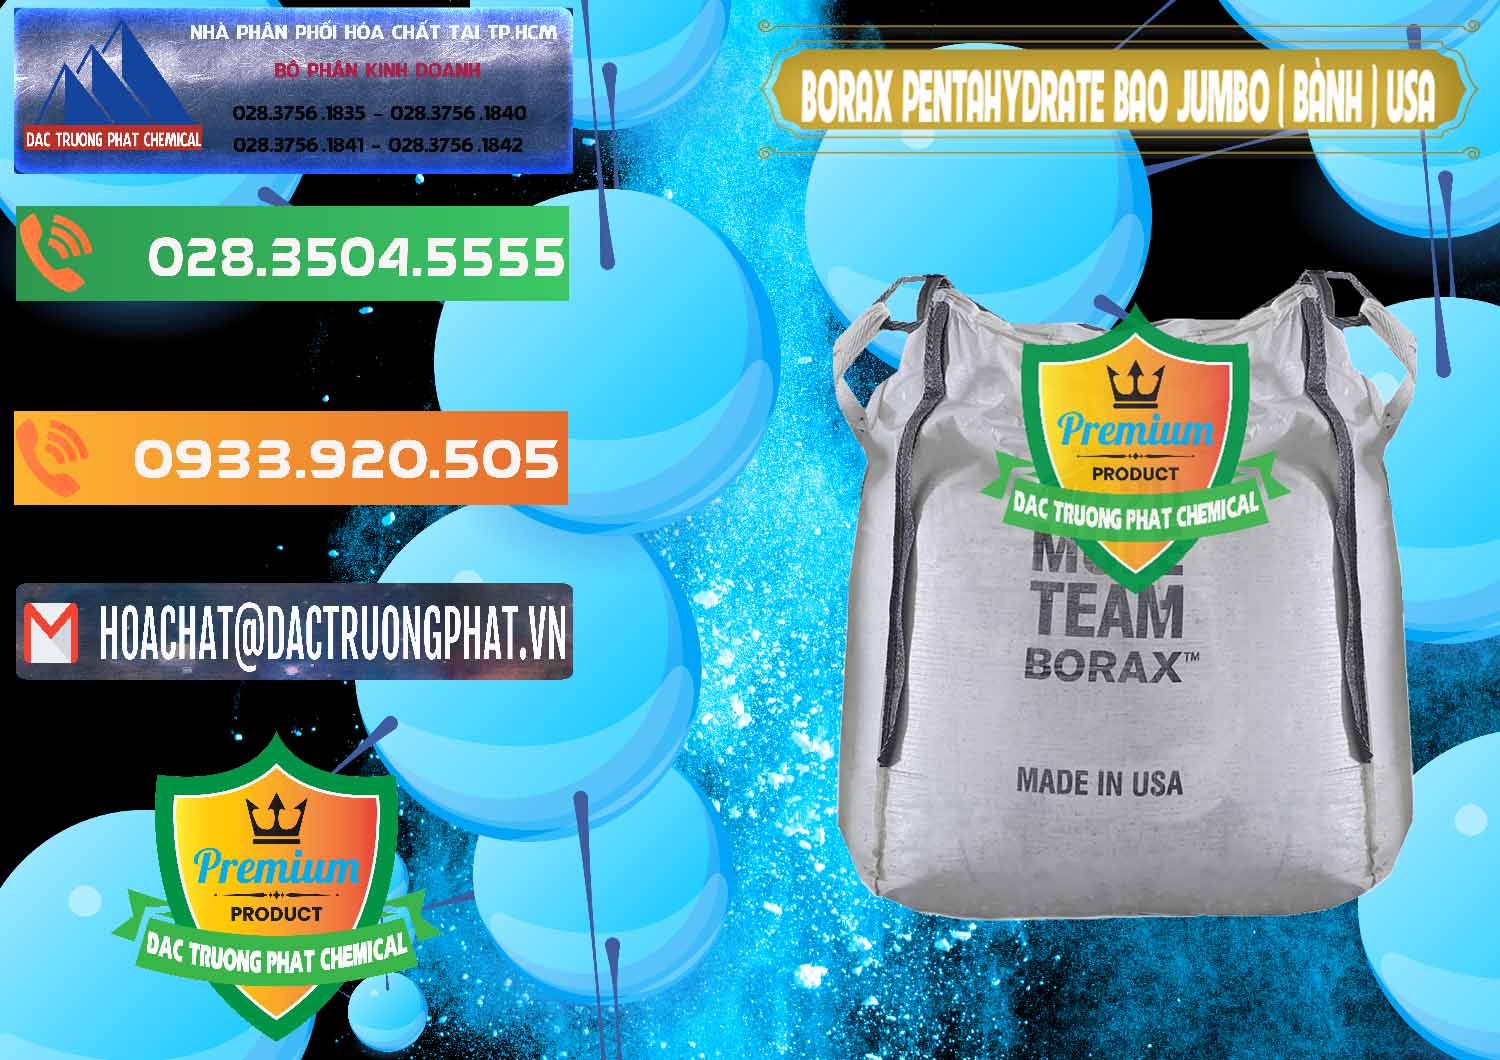 Chuyên cung cấp & bán Borax Pentahydrate Bao Jumbo ( Bành ) Mule 20 Team Mỹ Usa - 0278 - Chuyên cung cấp & phân phối hóa chất tại TP.HCM - hoachatxulynuoc.com.vn